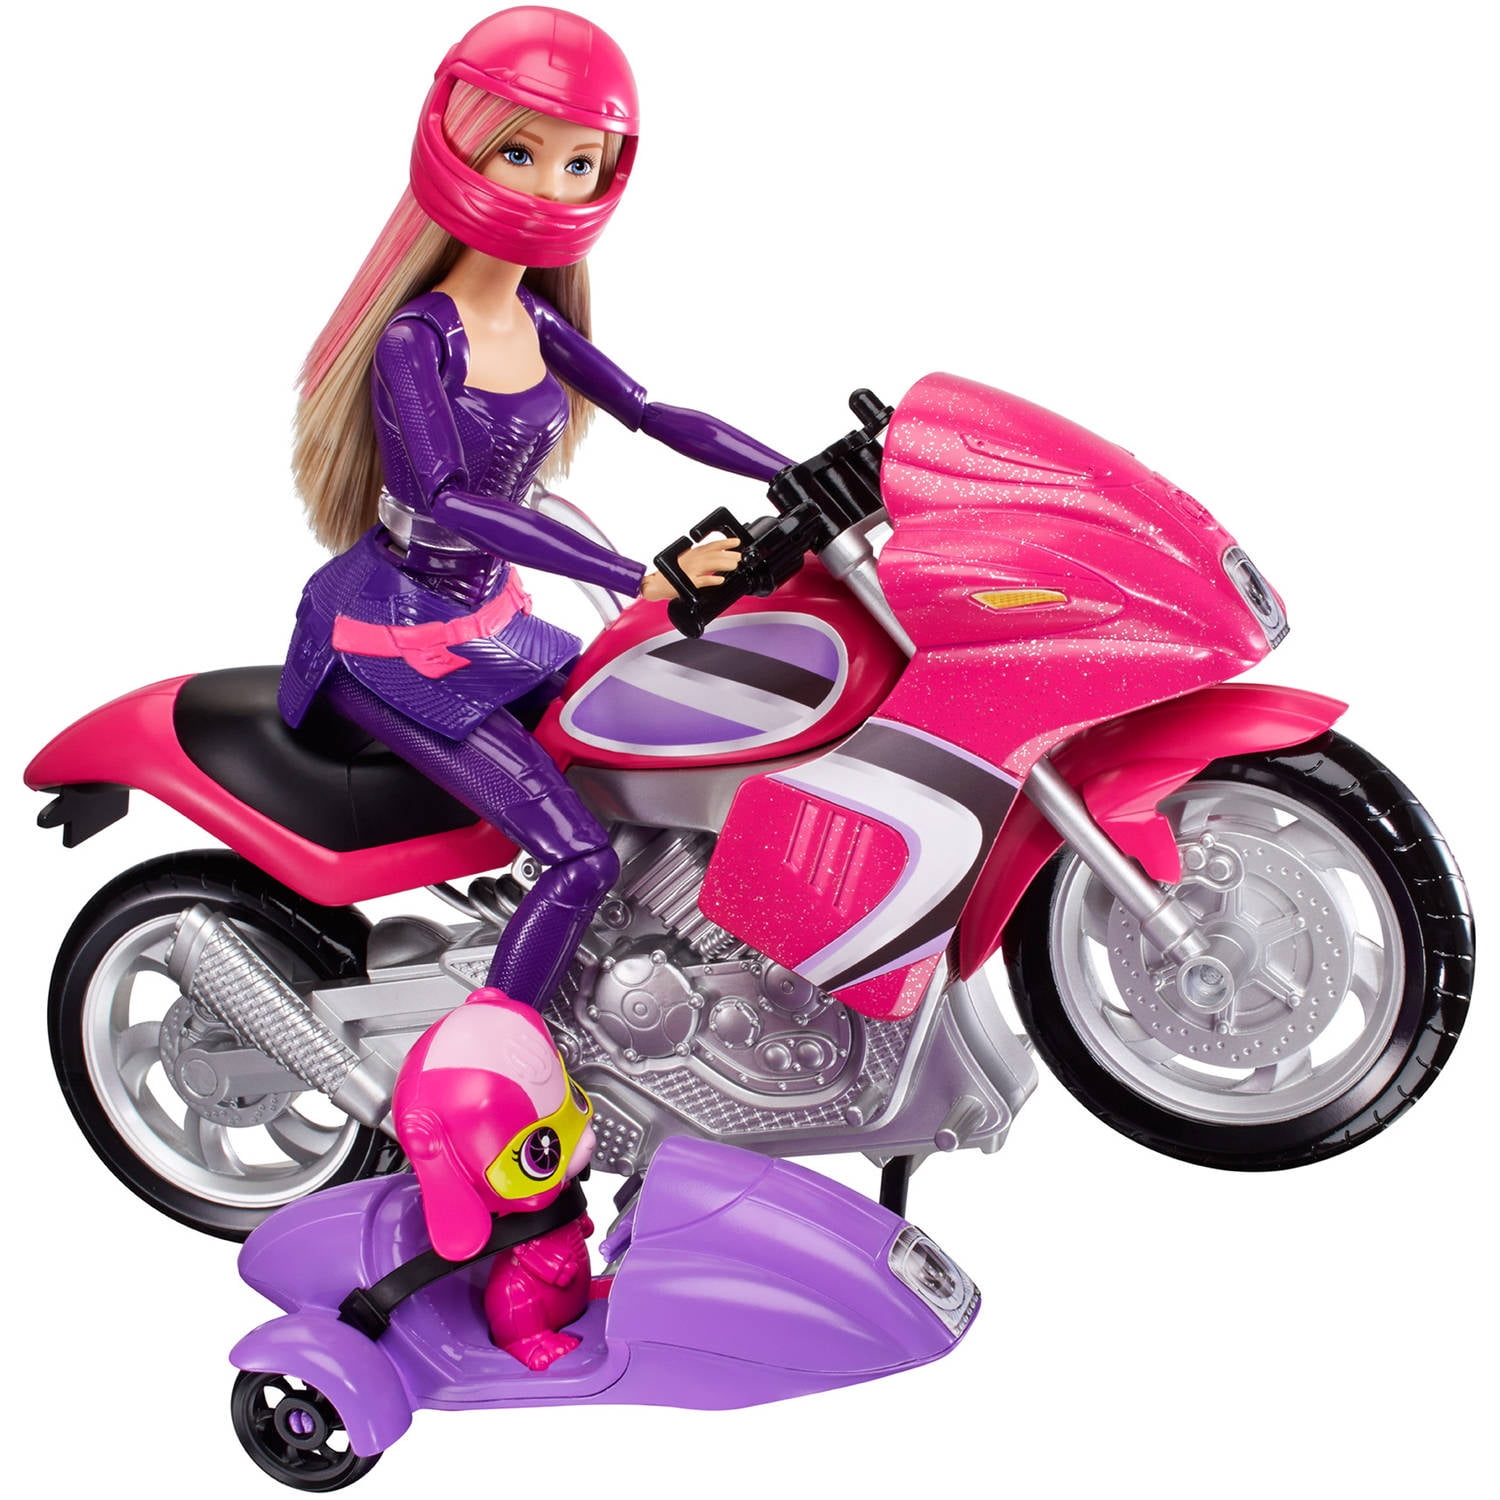 Tor ziehen Serena barbie agententeam motorrad Legitim Scully Getränk